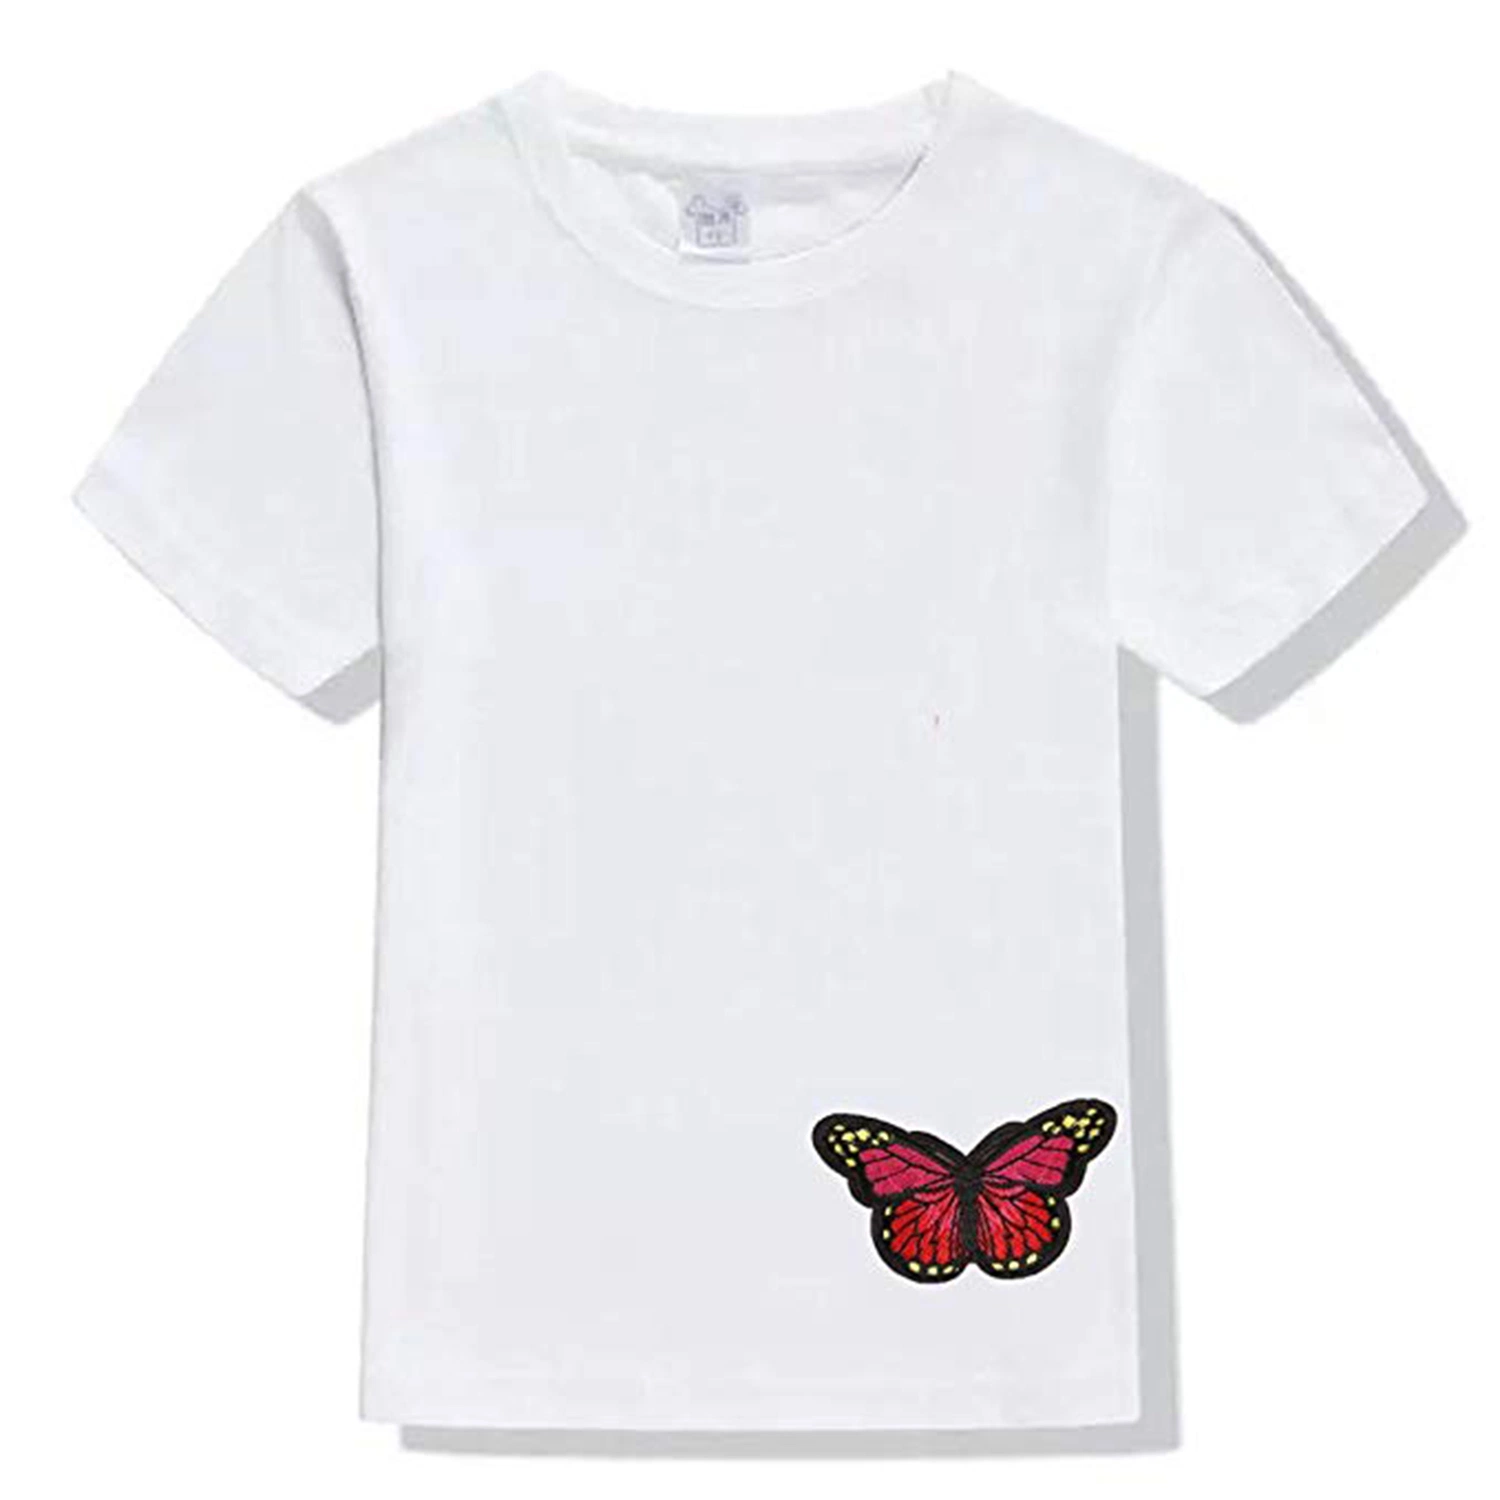 Красочных бабочек патч утюг/Sew! на исправление вышивкой логотипа Applique исправлений